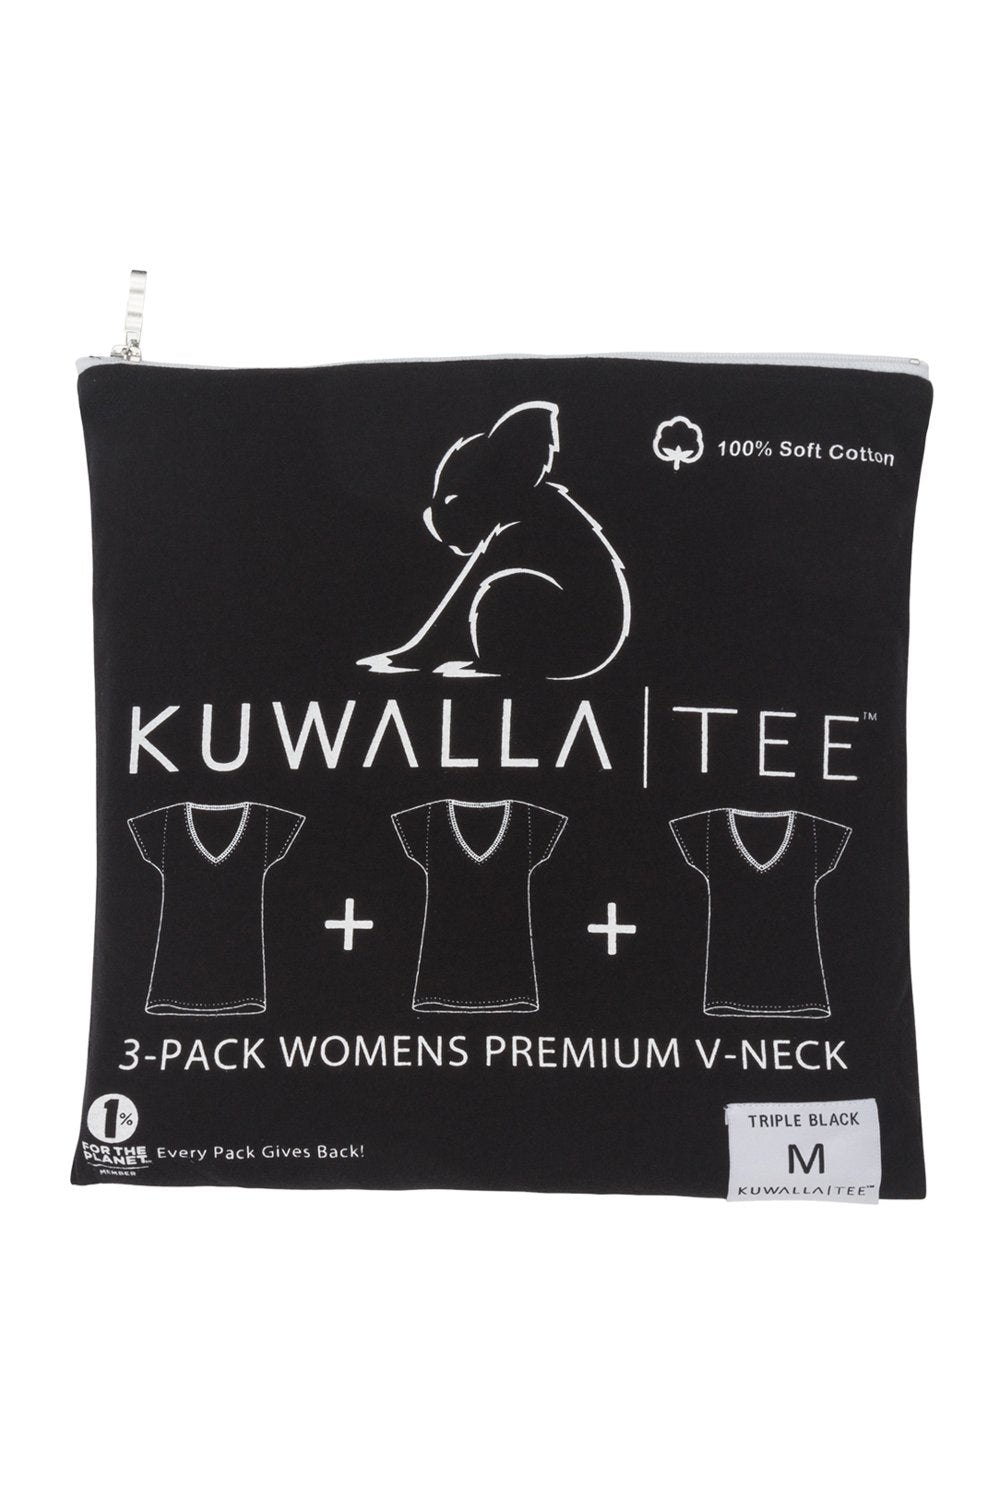 Kuwalla Tee Women 3 Pack Black Vee Neck - My Filosophy